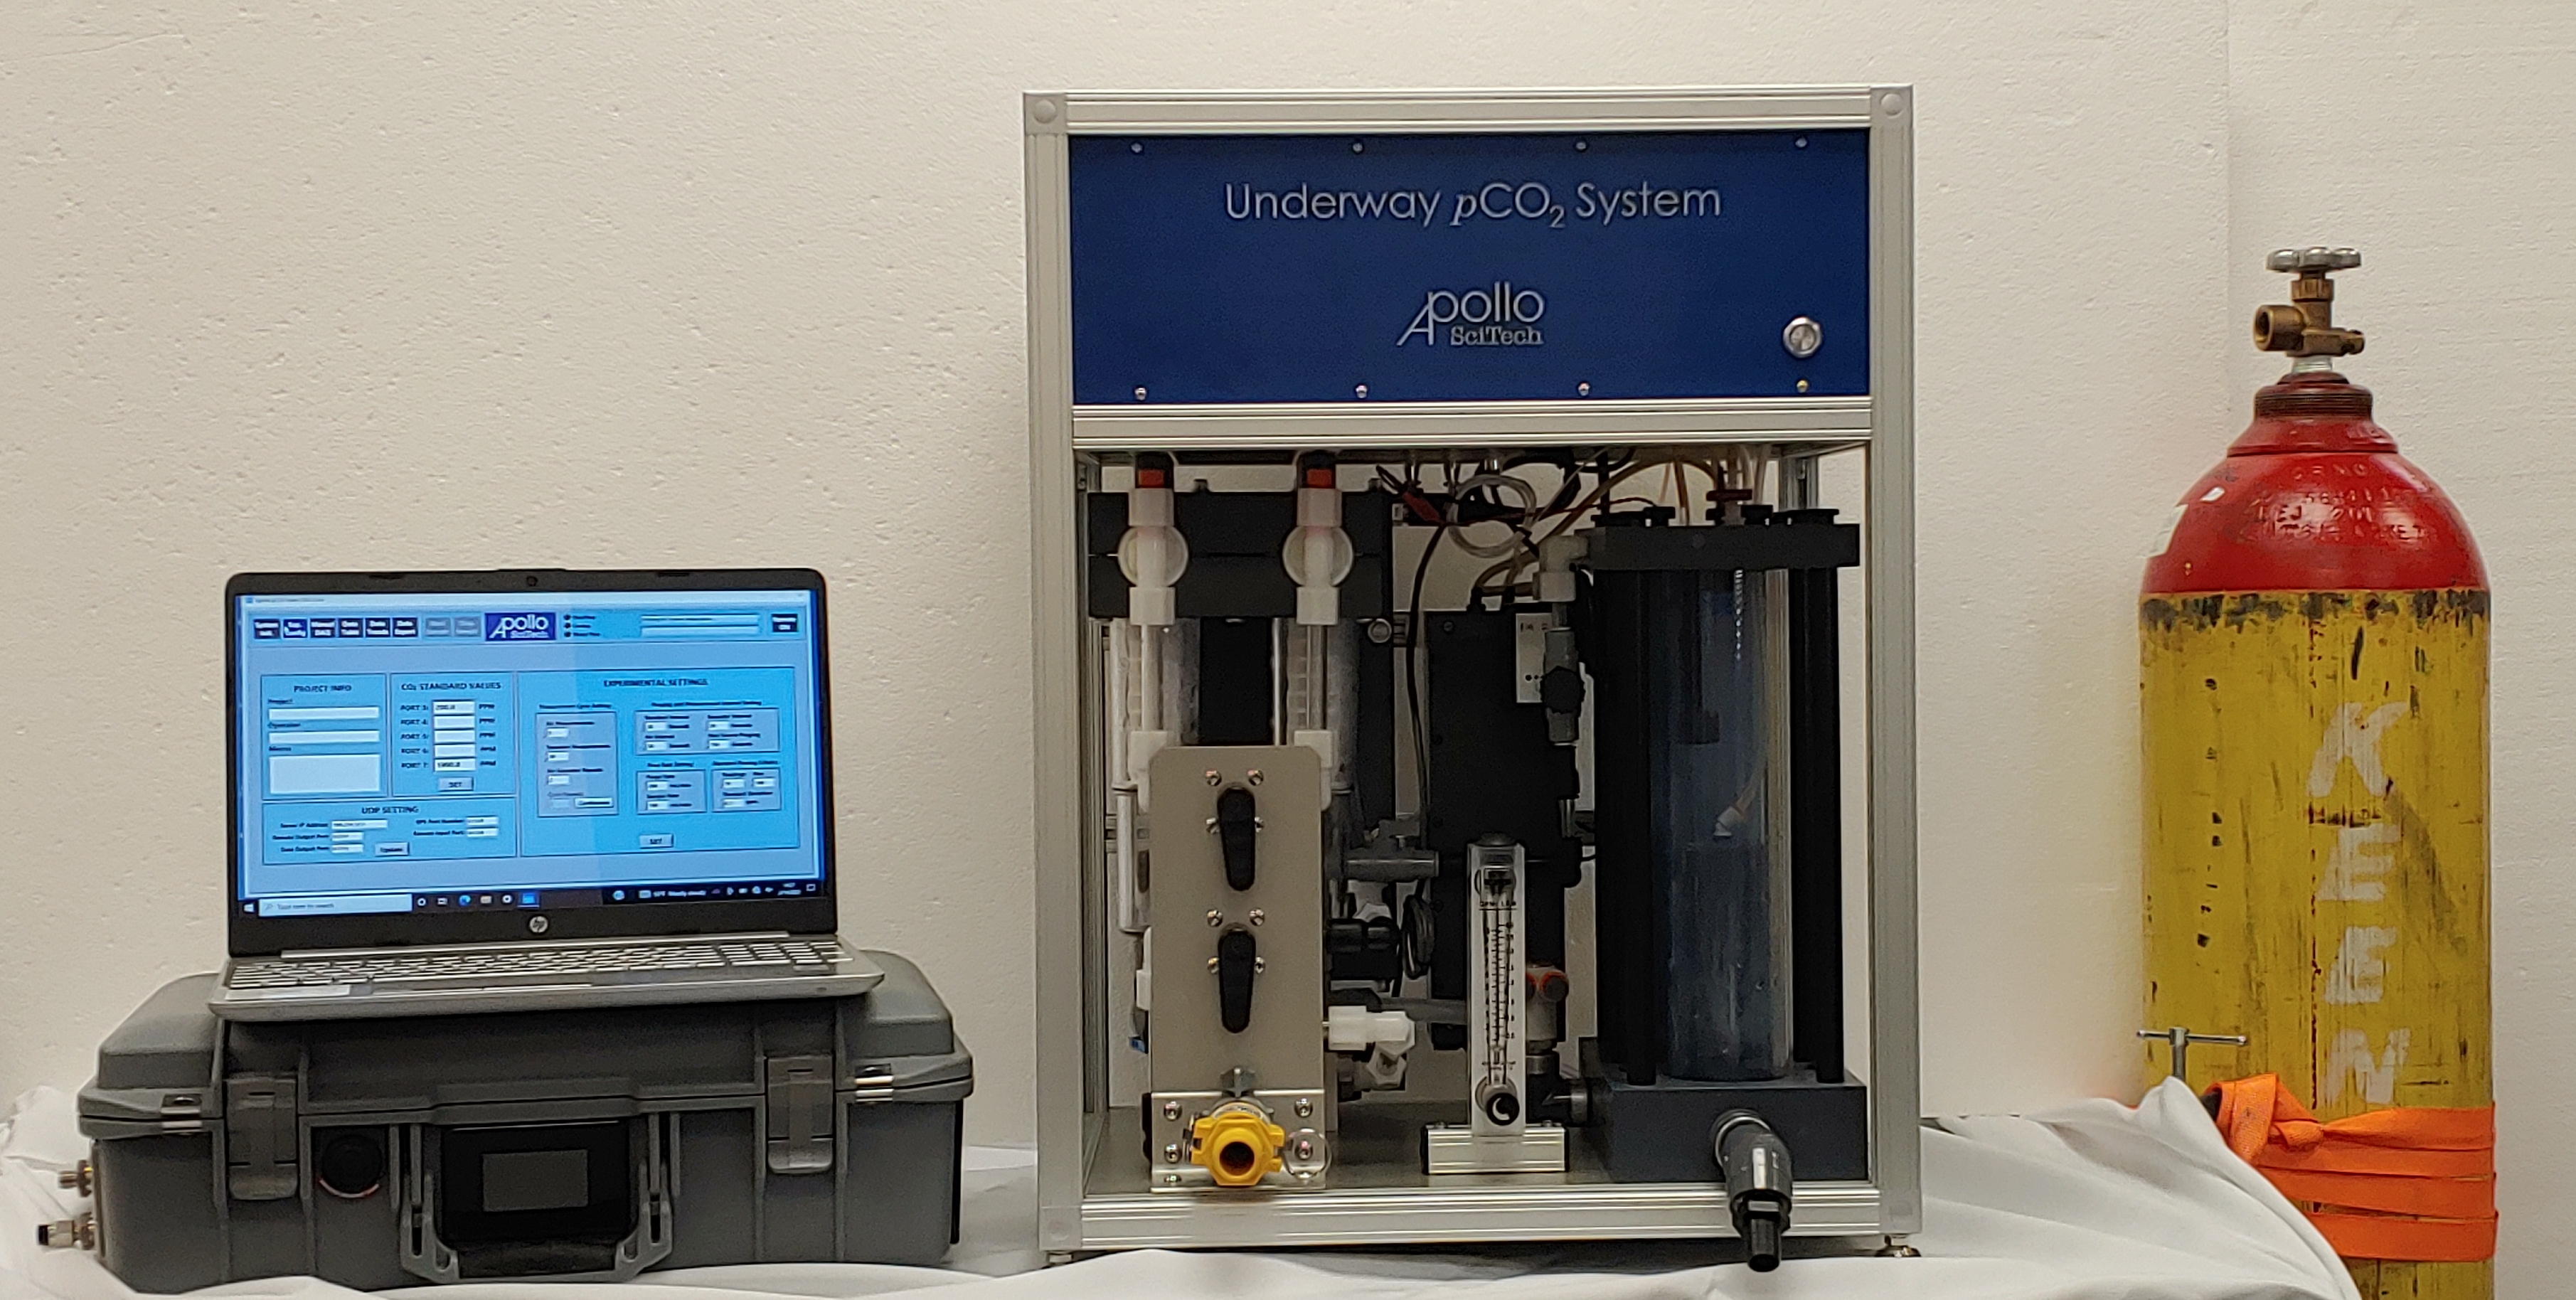 LI-5400A pCO2 System with a LI-COR trace gas analyzer